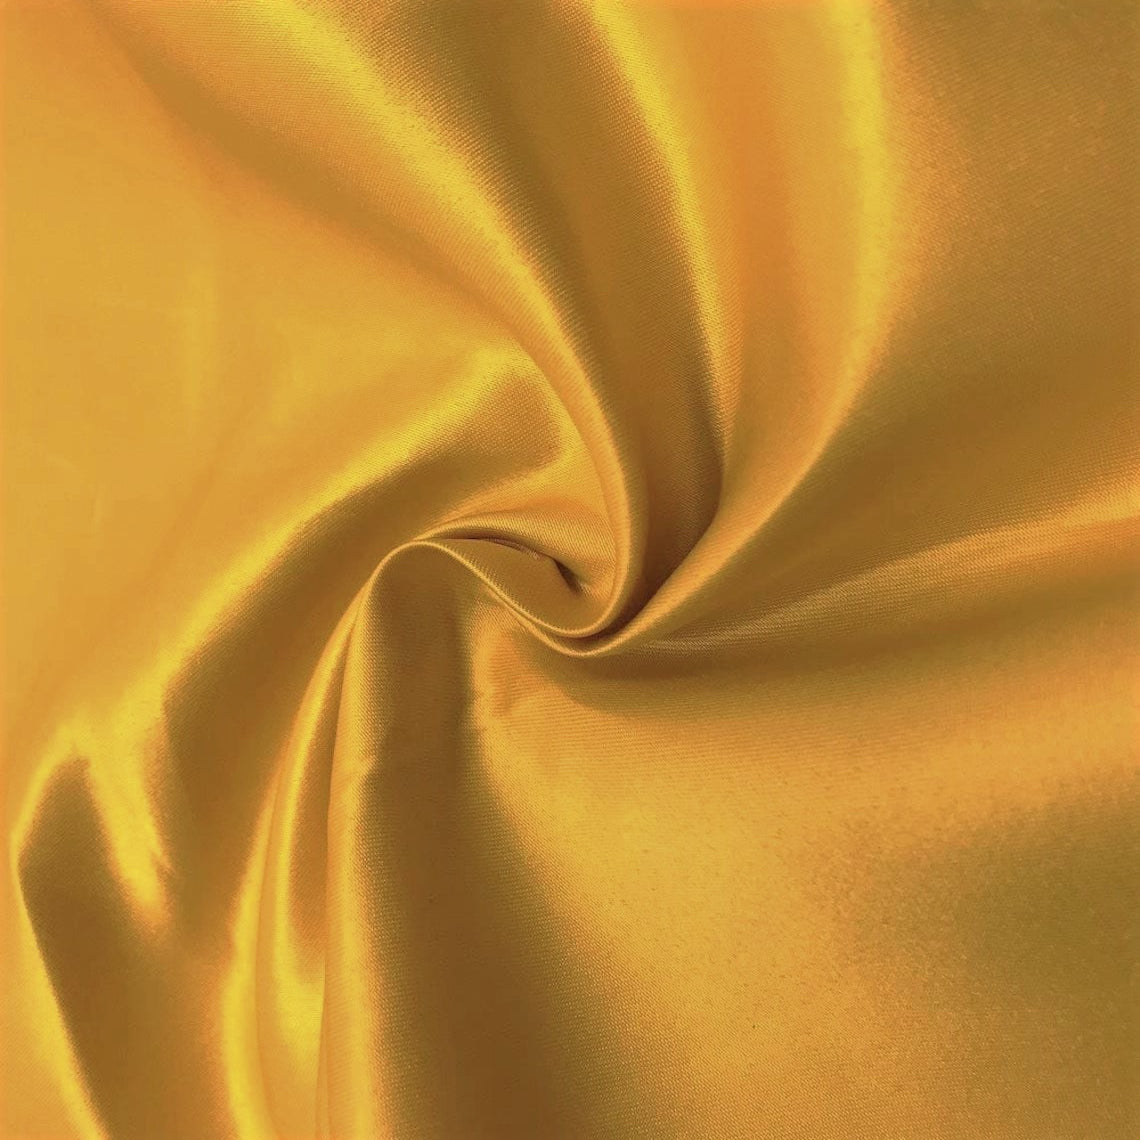 Matte Satin (Peau de Soie) Fabric - Magenta Many Colors Available